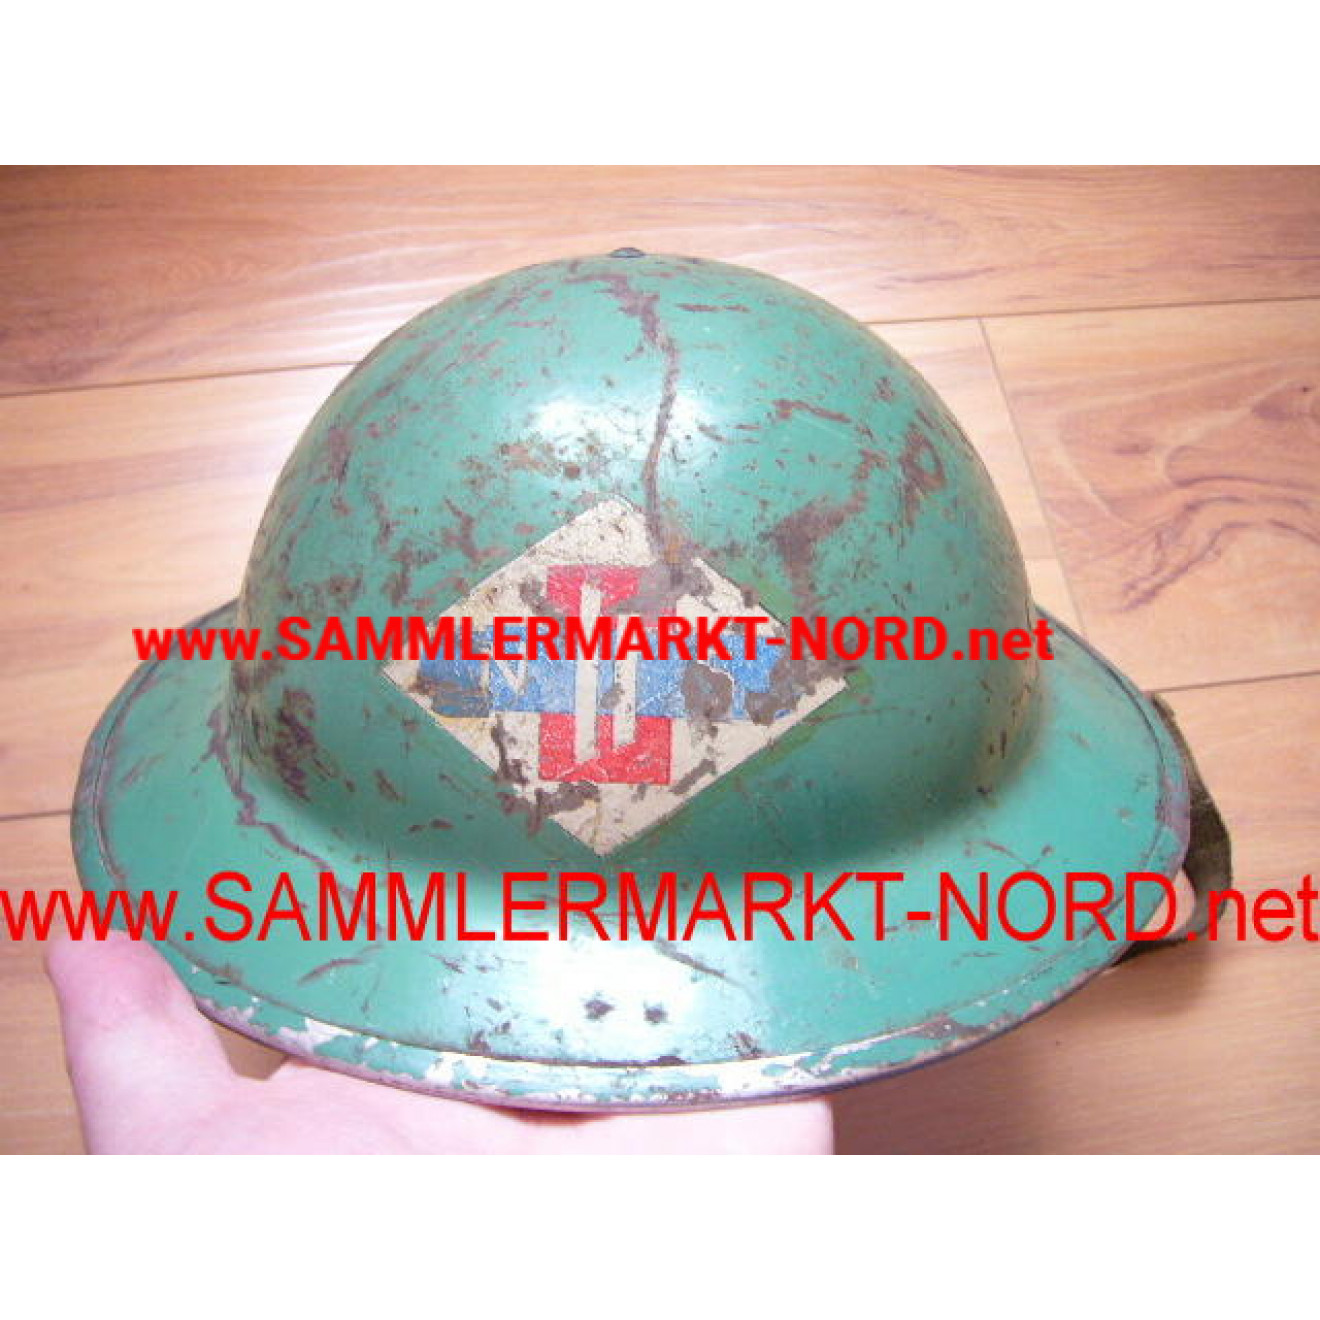 British Steel Helmet of the Dutch Railways "Nederlandse Spoorwegen" (NS)